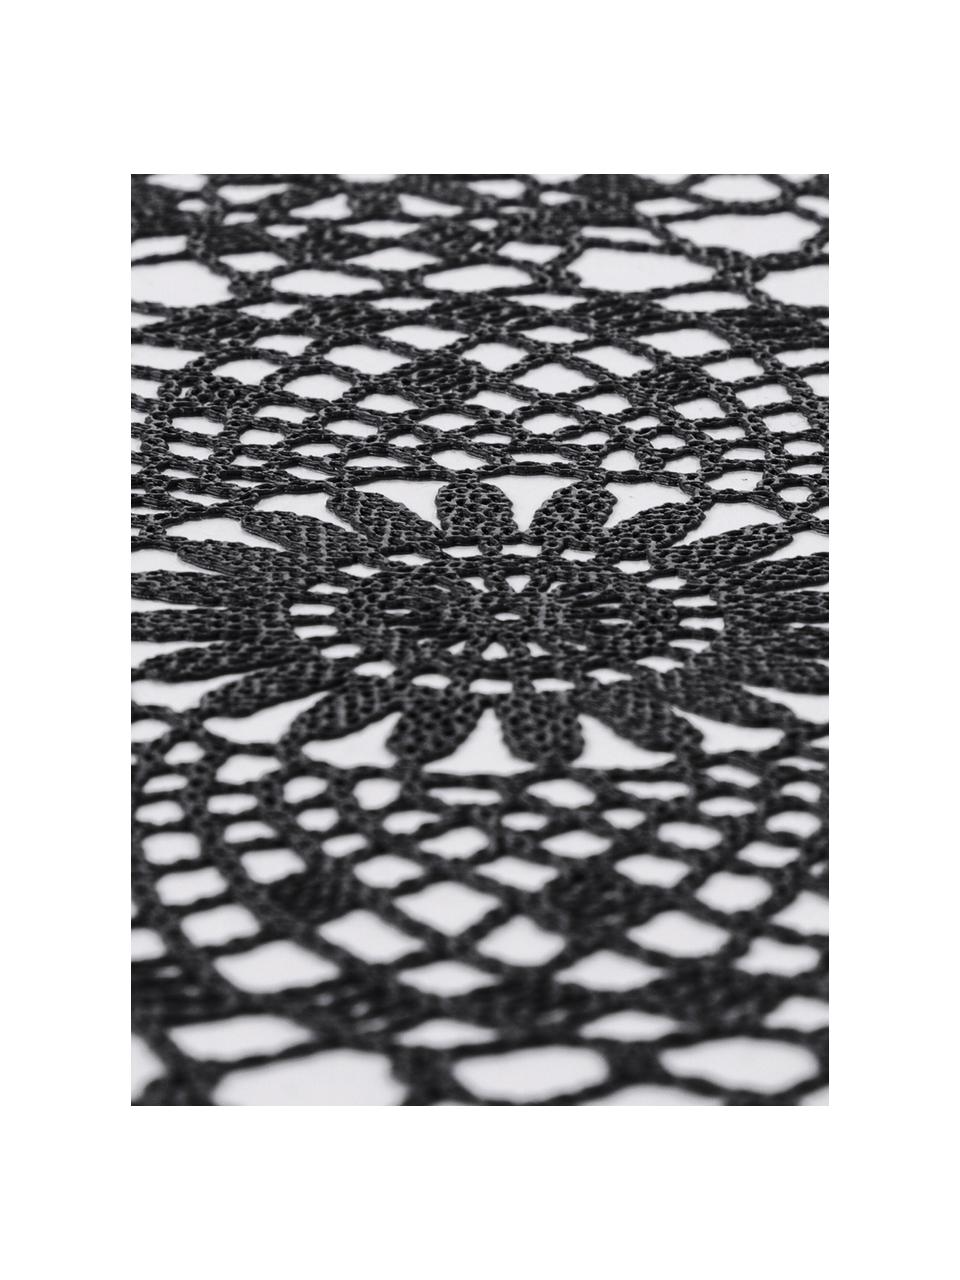 Podkładka z tworzywa sztucznego Crochet, 4 szt., Tworzywo sztuczne (PVC), Czarny, S 30 x D 45 cm